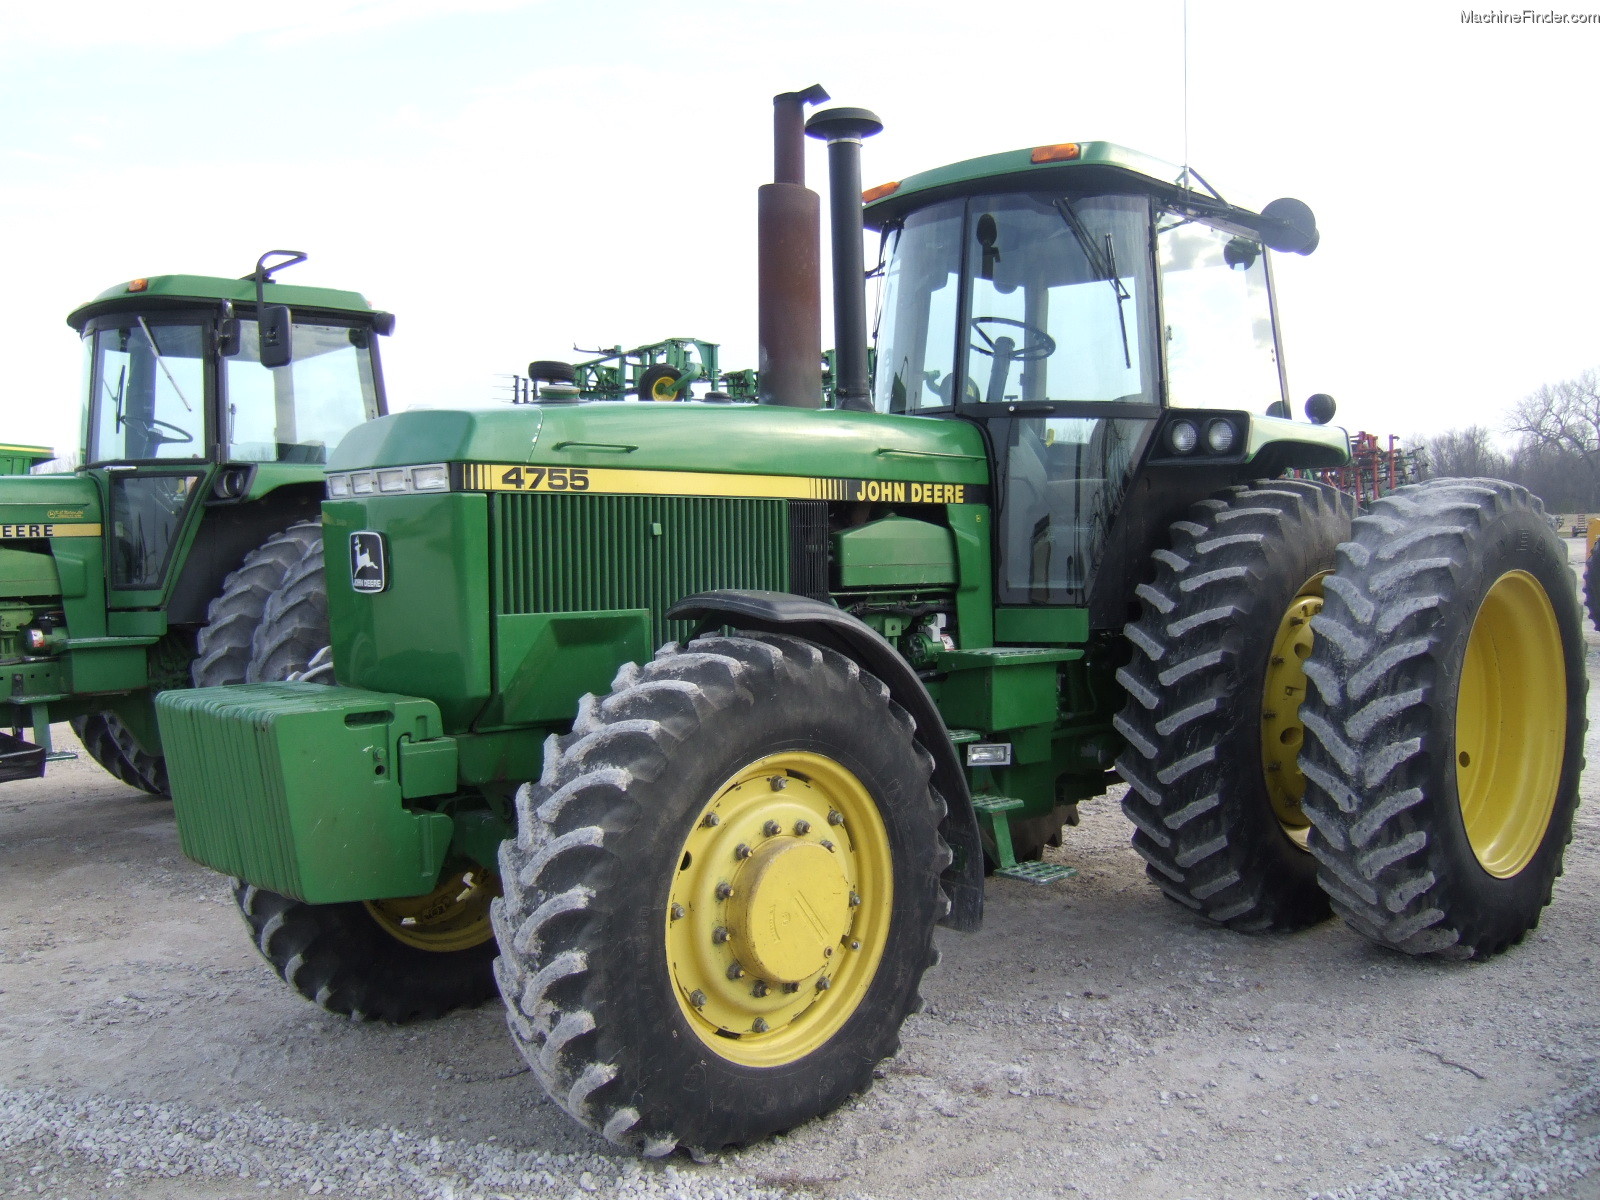 1989 John Deere 4755 Tractors - Row Crop (+100hp) - John Deere ...